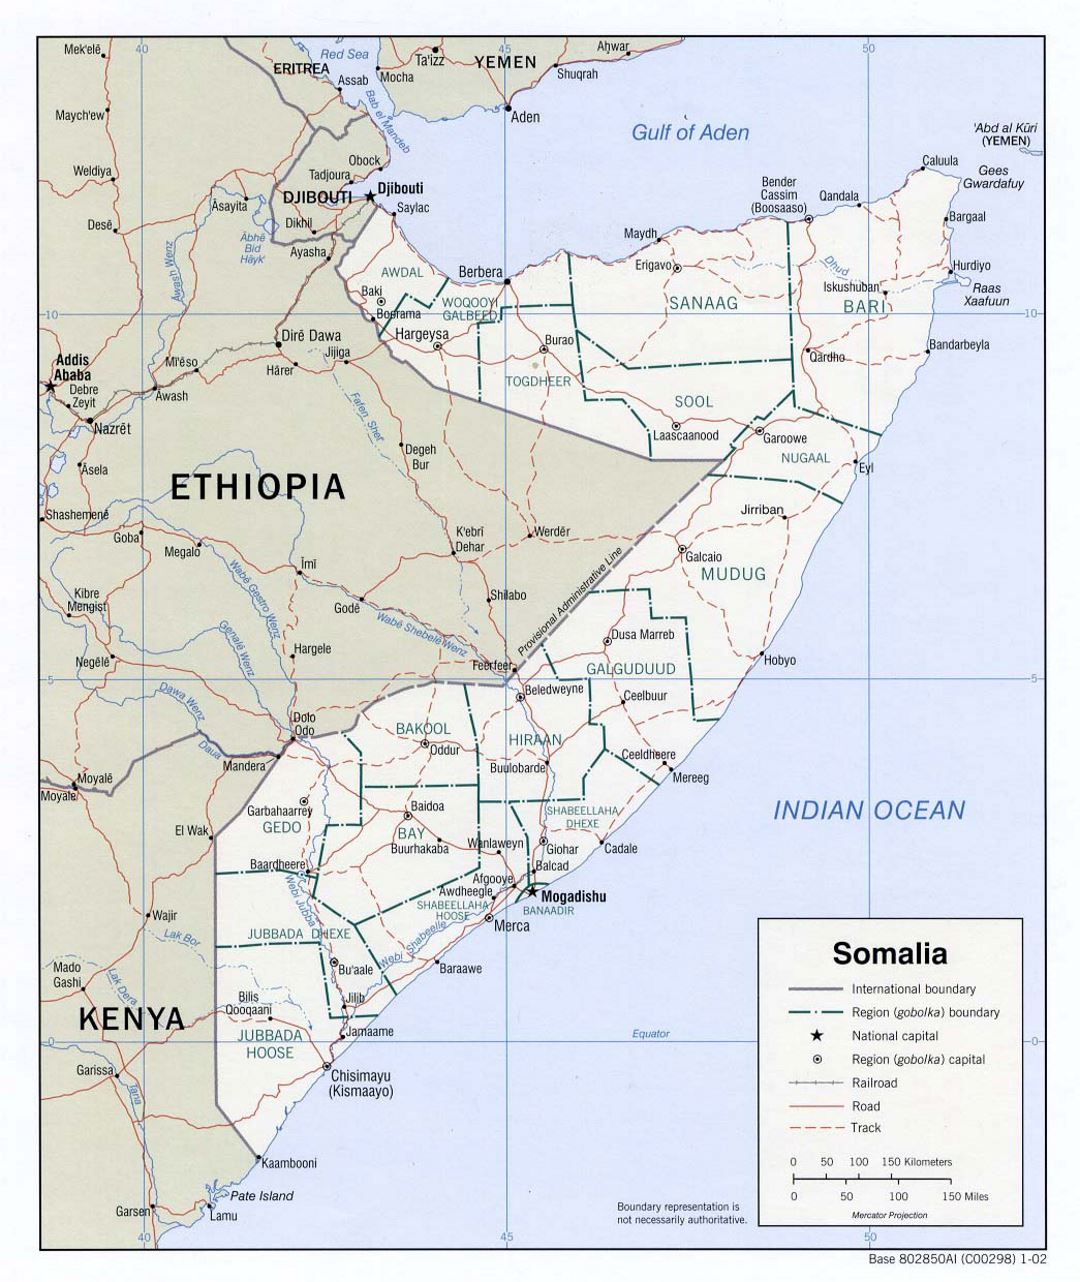 Детальная политическая и административная карта Сомали с дорогами, железными дорогами и крупными городами - 2002